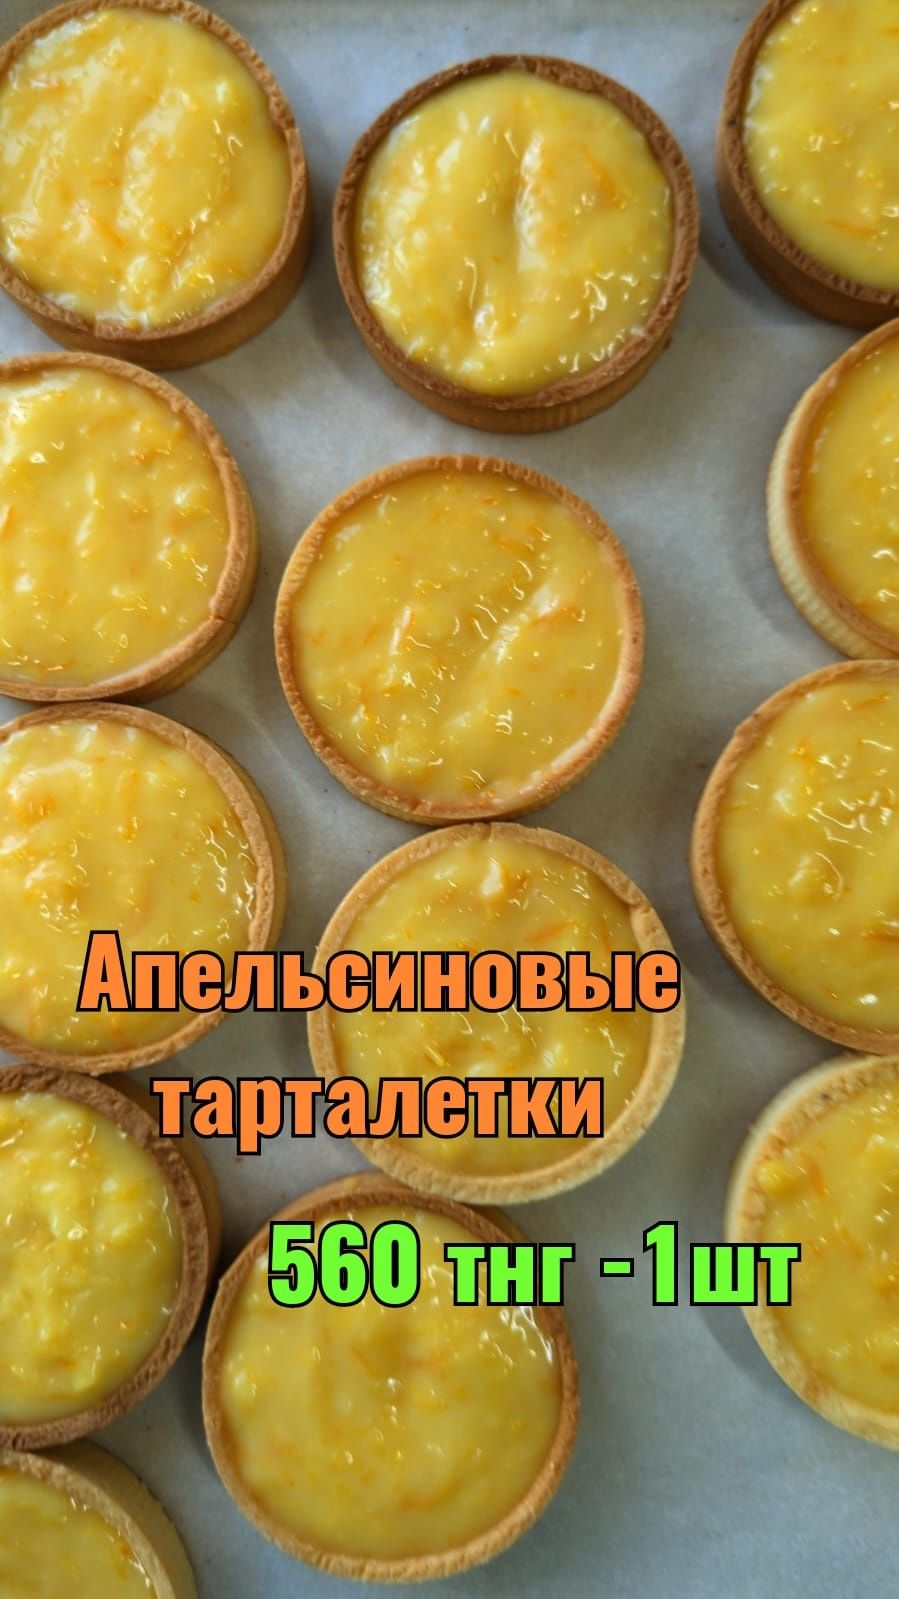 Десерты Алматы ОПТОМ